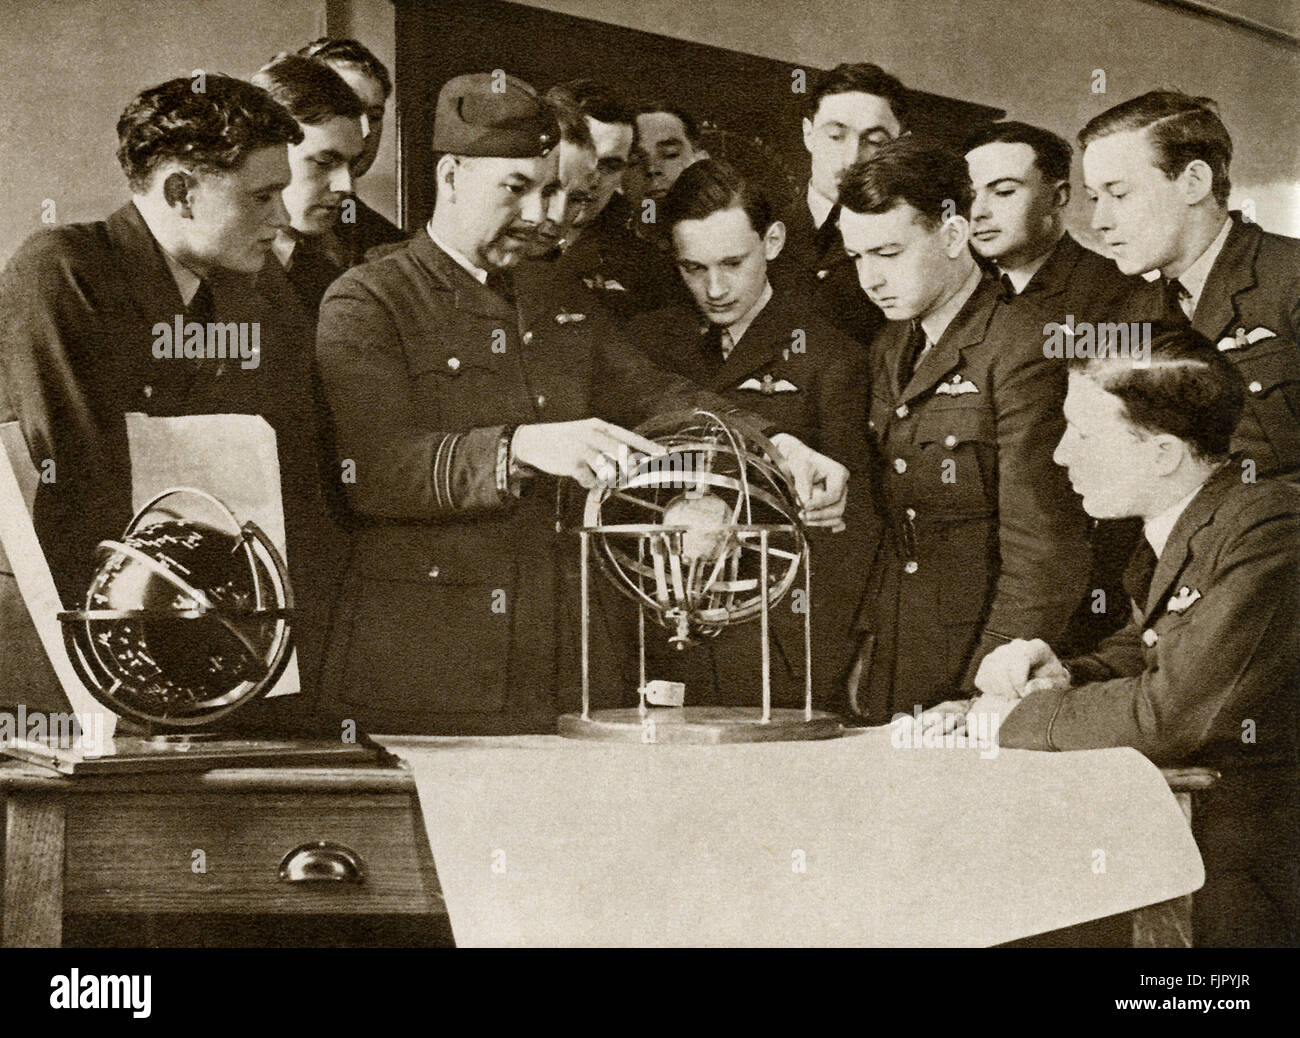 Les cadets de l'air ,c. 1940. La DEUXIÈME GUERRE MONDIALE, à un camp d'entraînement de la force aérienne. Apprendre la navigation et la météorologie pratique avec spherioscopes. Banque D'Images